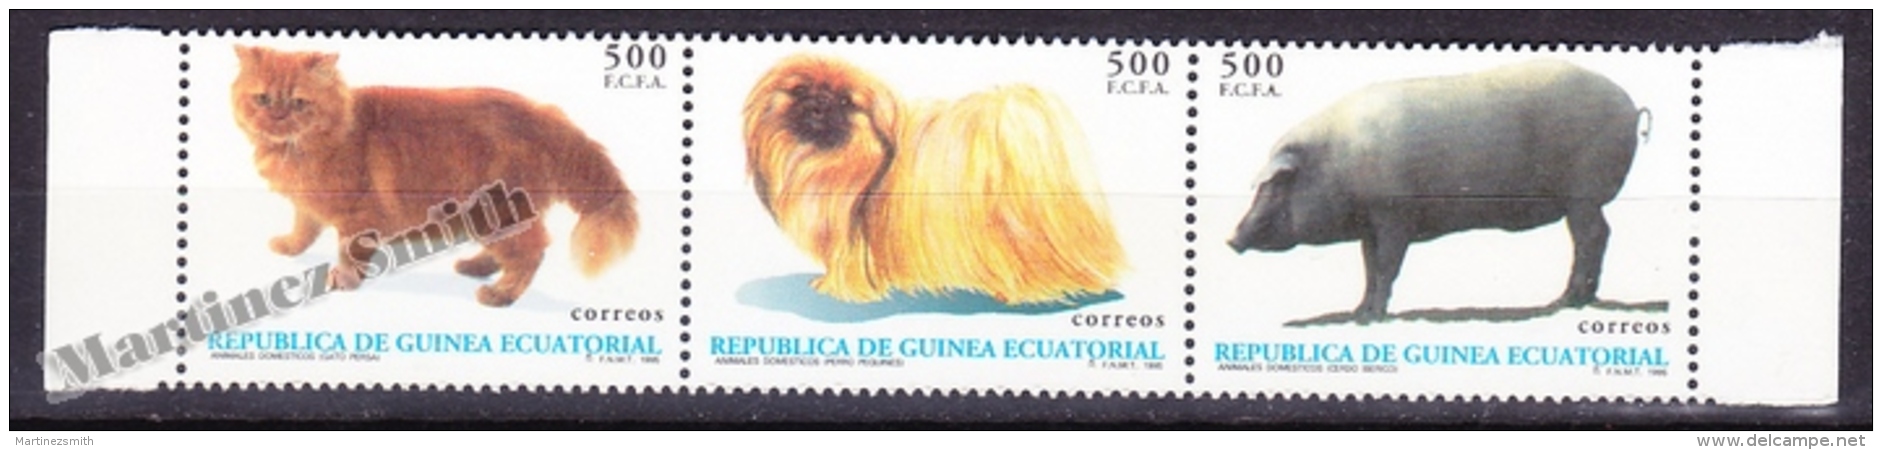 Equatorial Guinea - Guinée Équatoriale 1994 Edifil 196- 198,  Domestic Animals- MNH - Equatoriaal Guinea